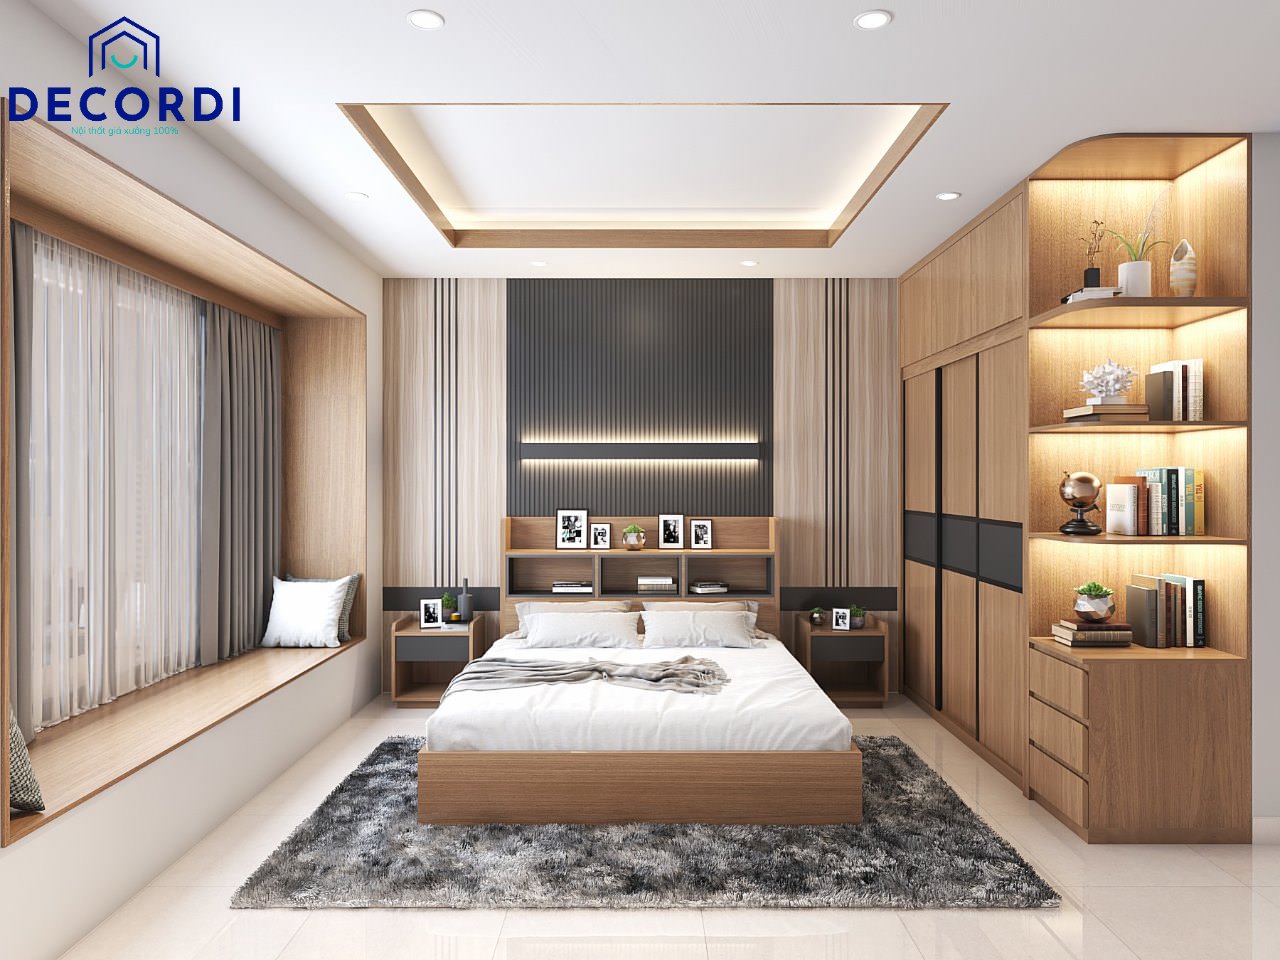 Thiết kế phòng ngủ lớn đẹp sang trọng với chất liệu gỗ cao cấp